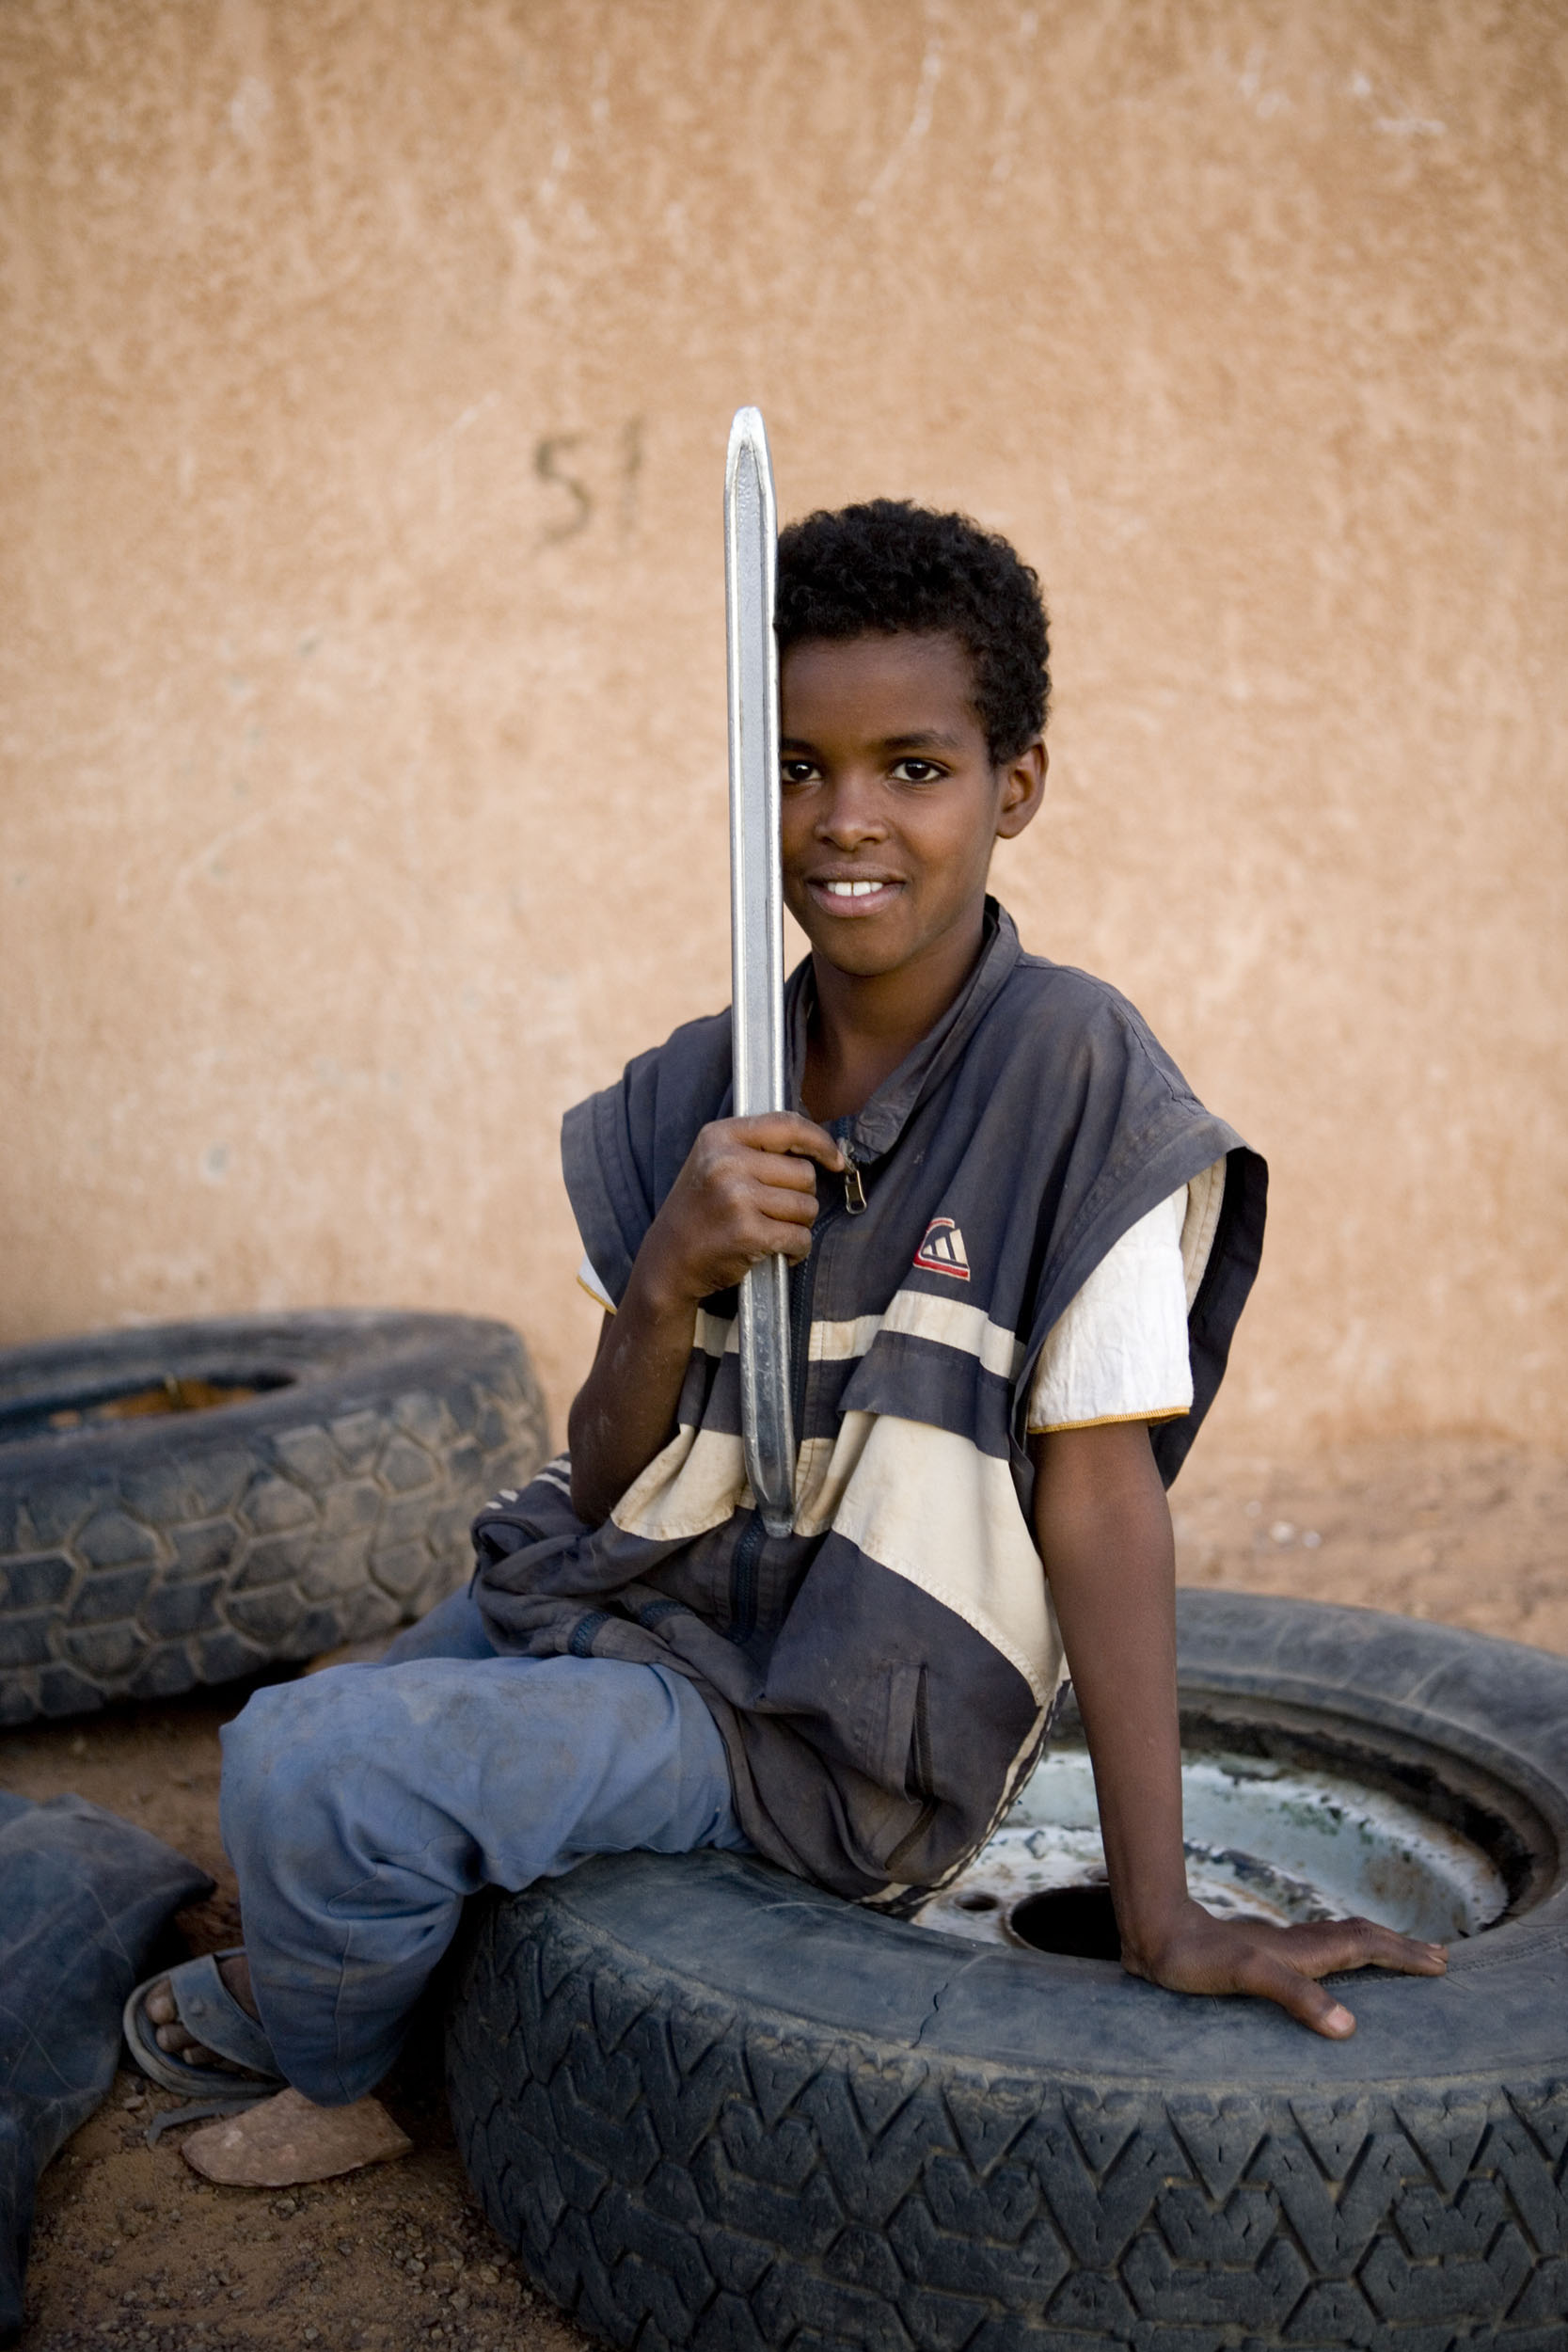 Portrait d'un enfant assis sur un gros pneu de camion avec un démonte pneu à la main. Photo réalisé dans la rue lors d'un voyage en Mauritanie.